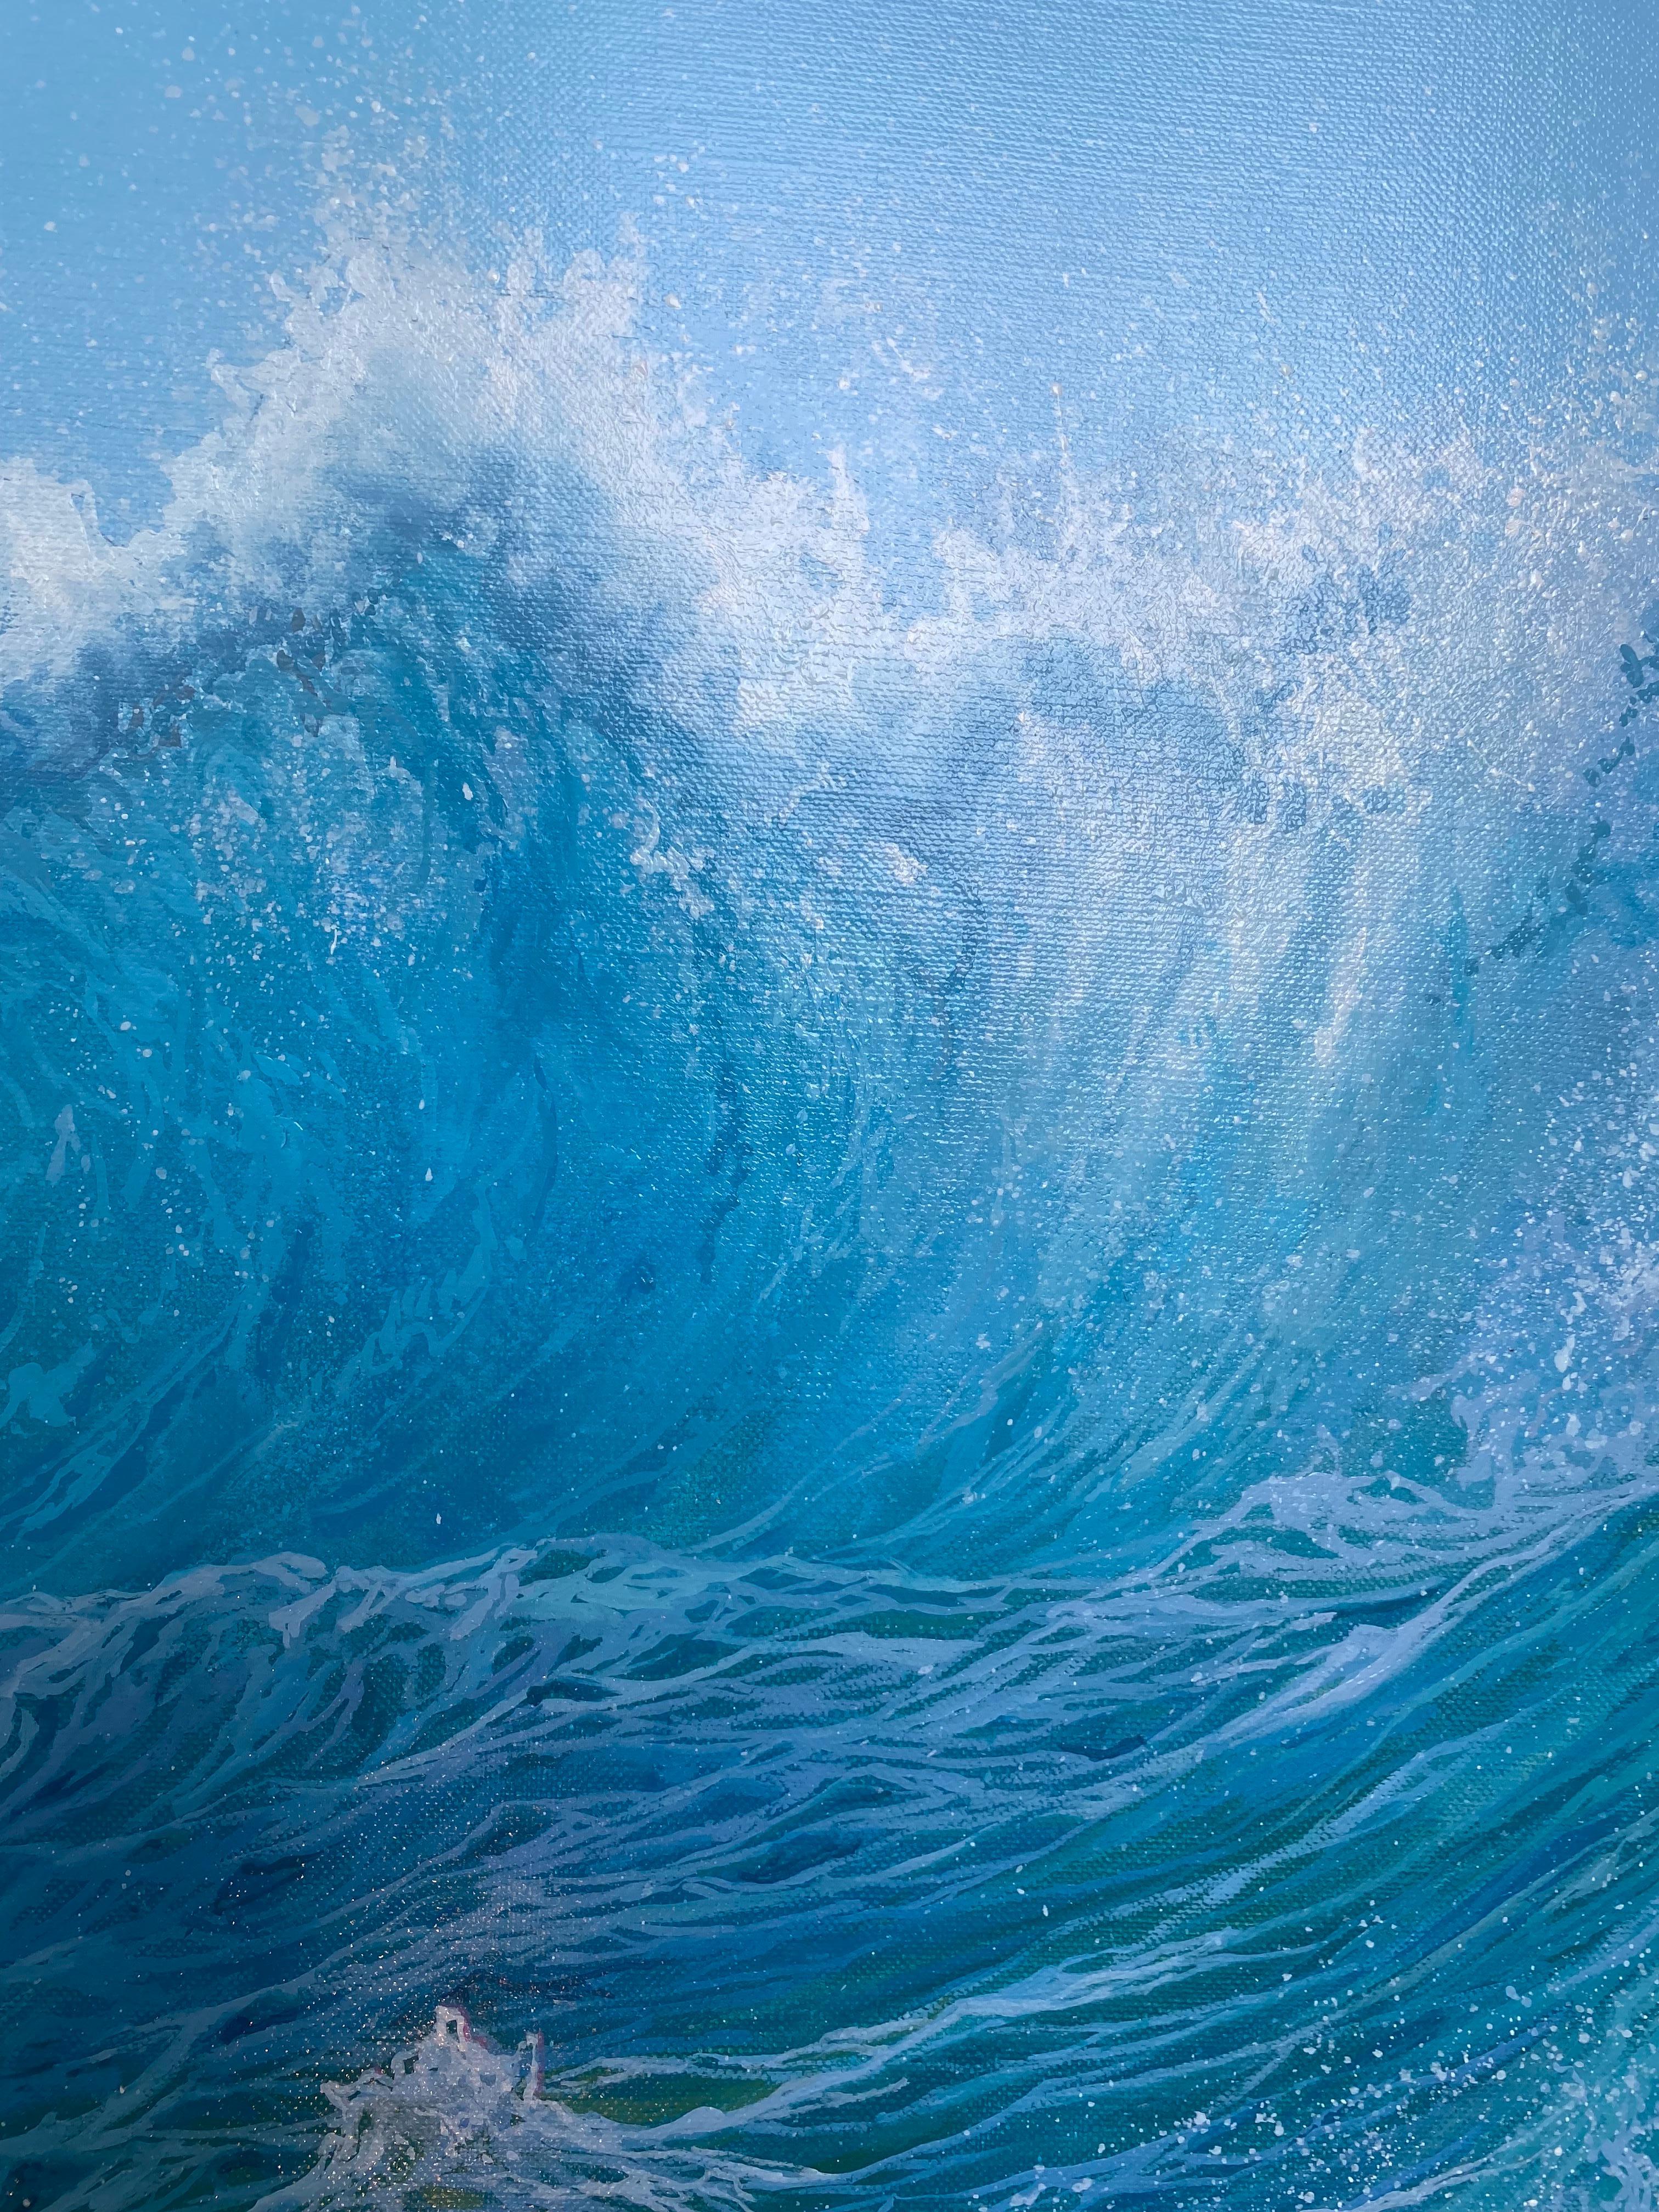 « Roaring seas », peinture contemporaine puissante de paysage marin bleu d'une vague qui s'effondre - Photoréalisme Painting par Marc Esteve